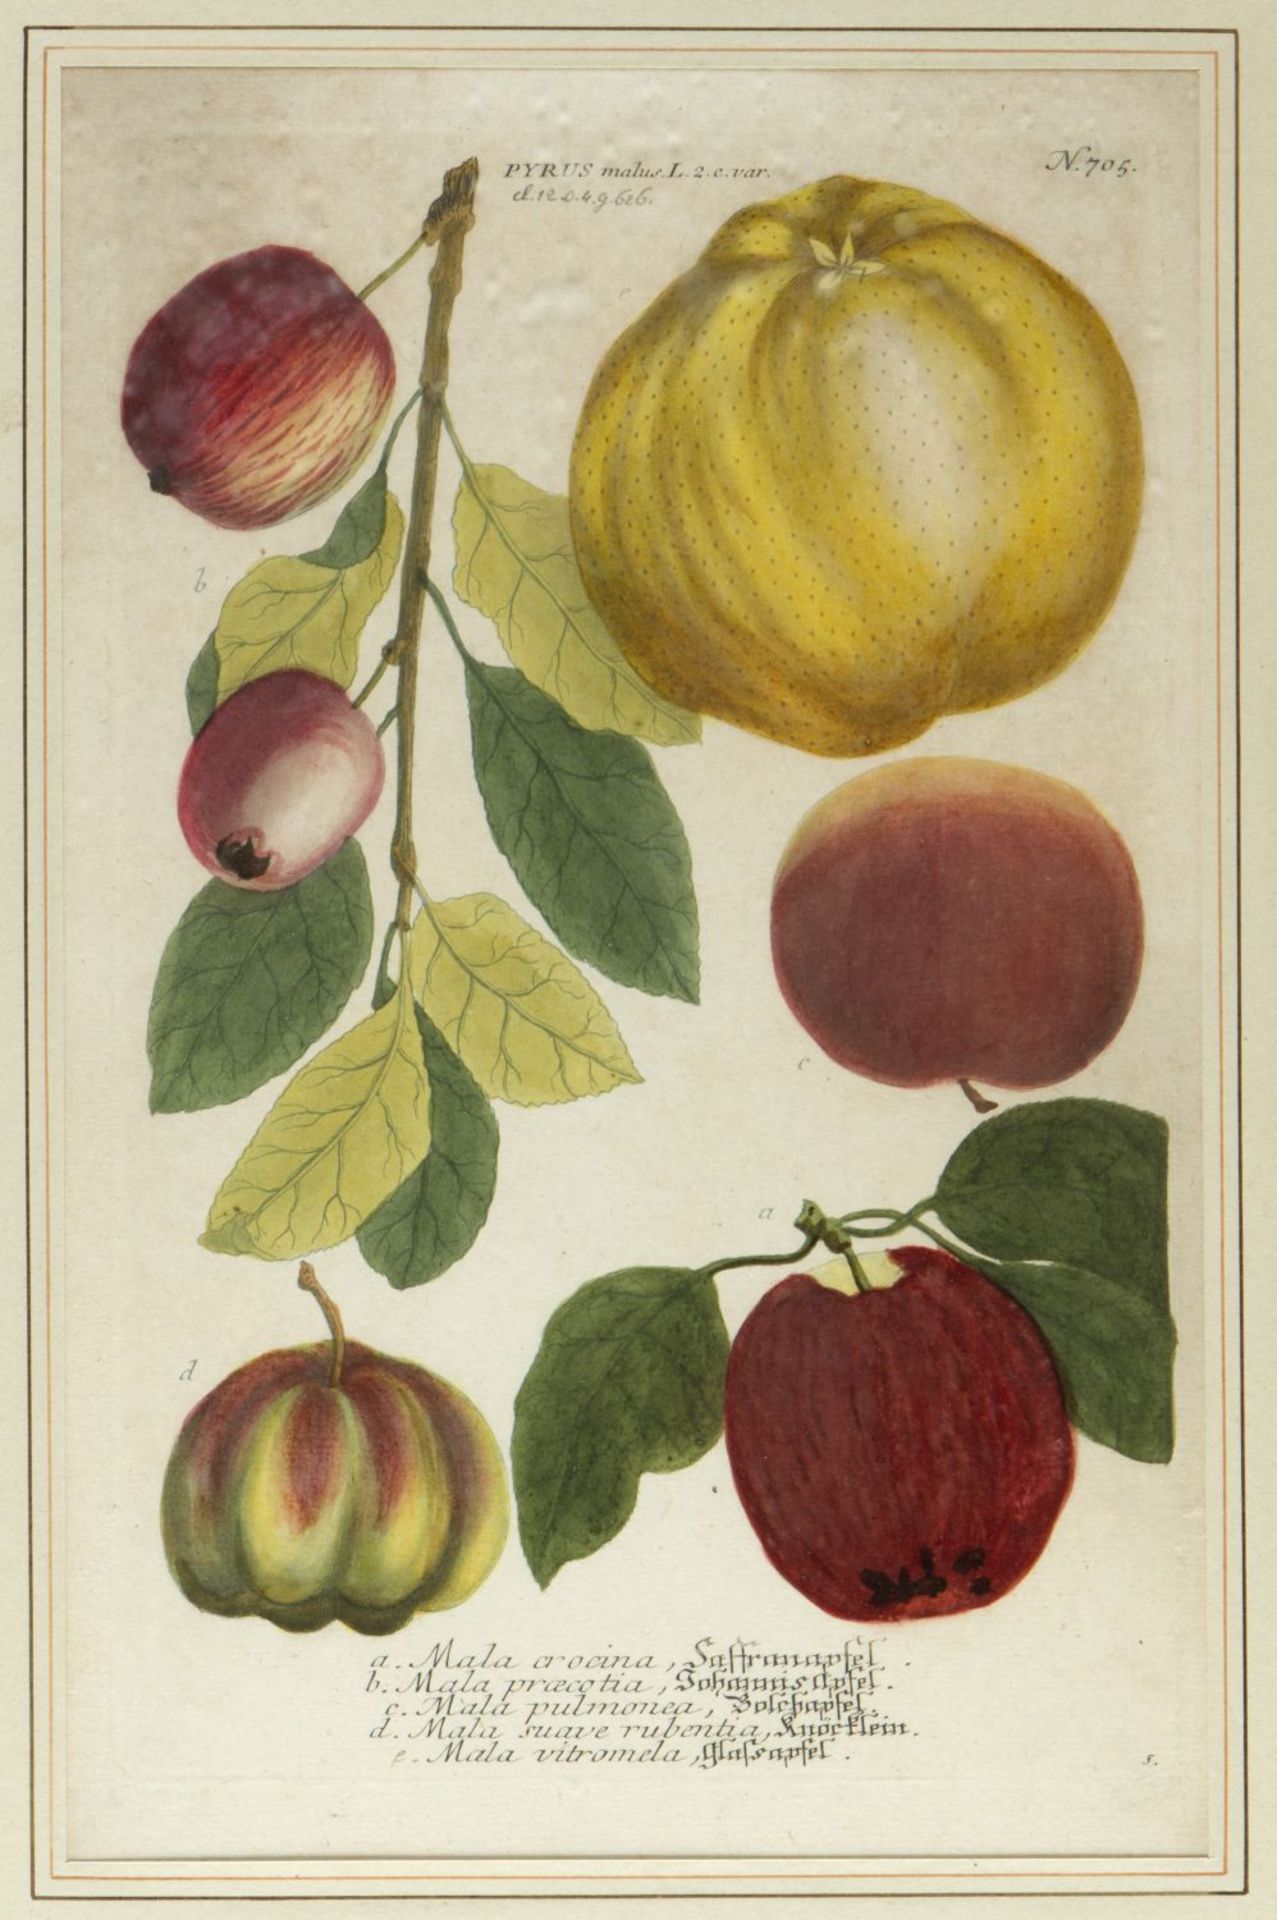 Weinmann, Johann Wilhelm. 1683 - 1741 Früchte und Pflanzen. 10 kol. Kupferstiche. Bis 33 x 21,5 cm. - Image 11 of 11